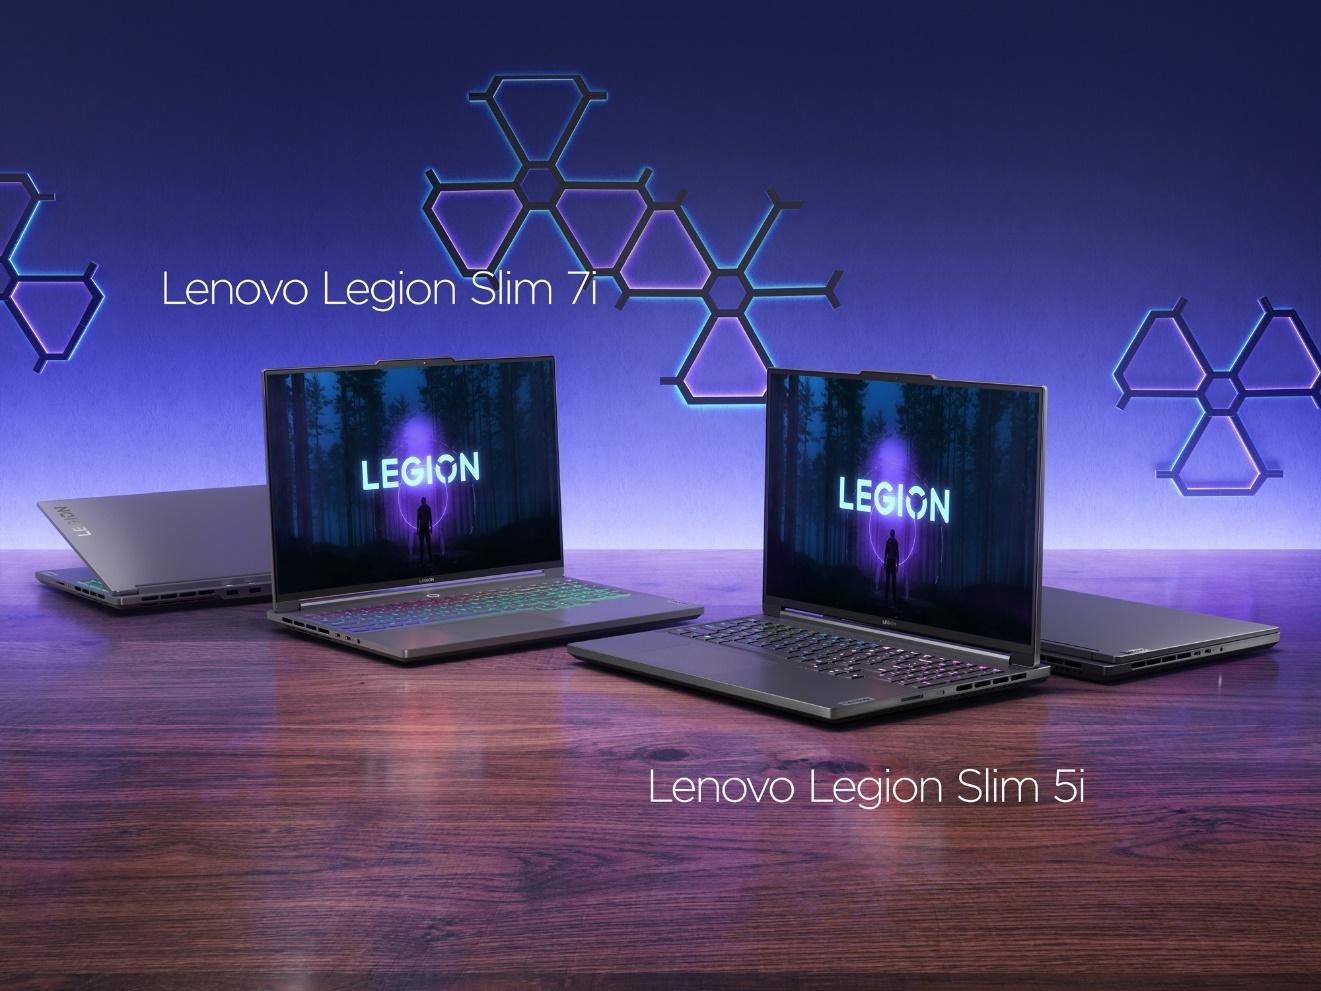 Lenovo ra mắt loạt laptop gaming dùng chip AI chuyên dụng đầu tiên thế giới - IU URI3mC LwXpStQrLT3dVrSVru1terewPOxA